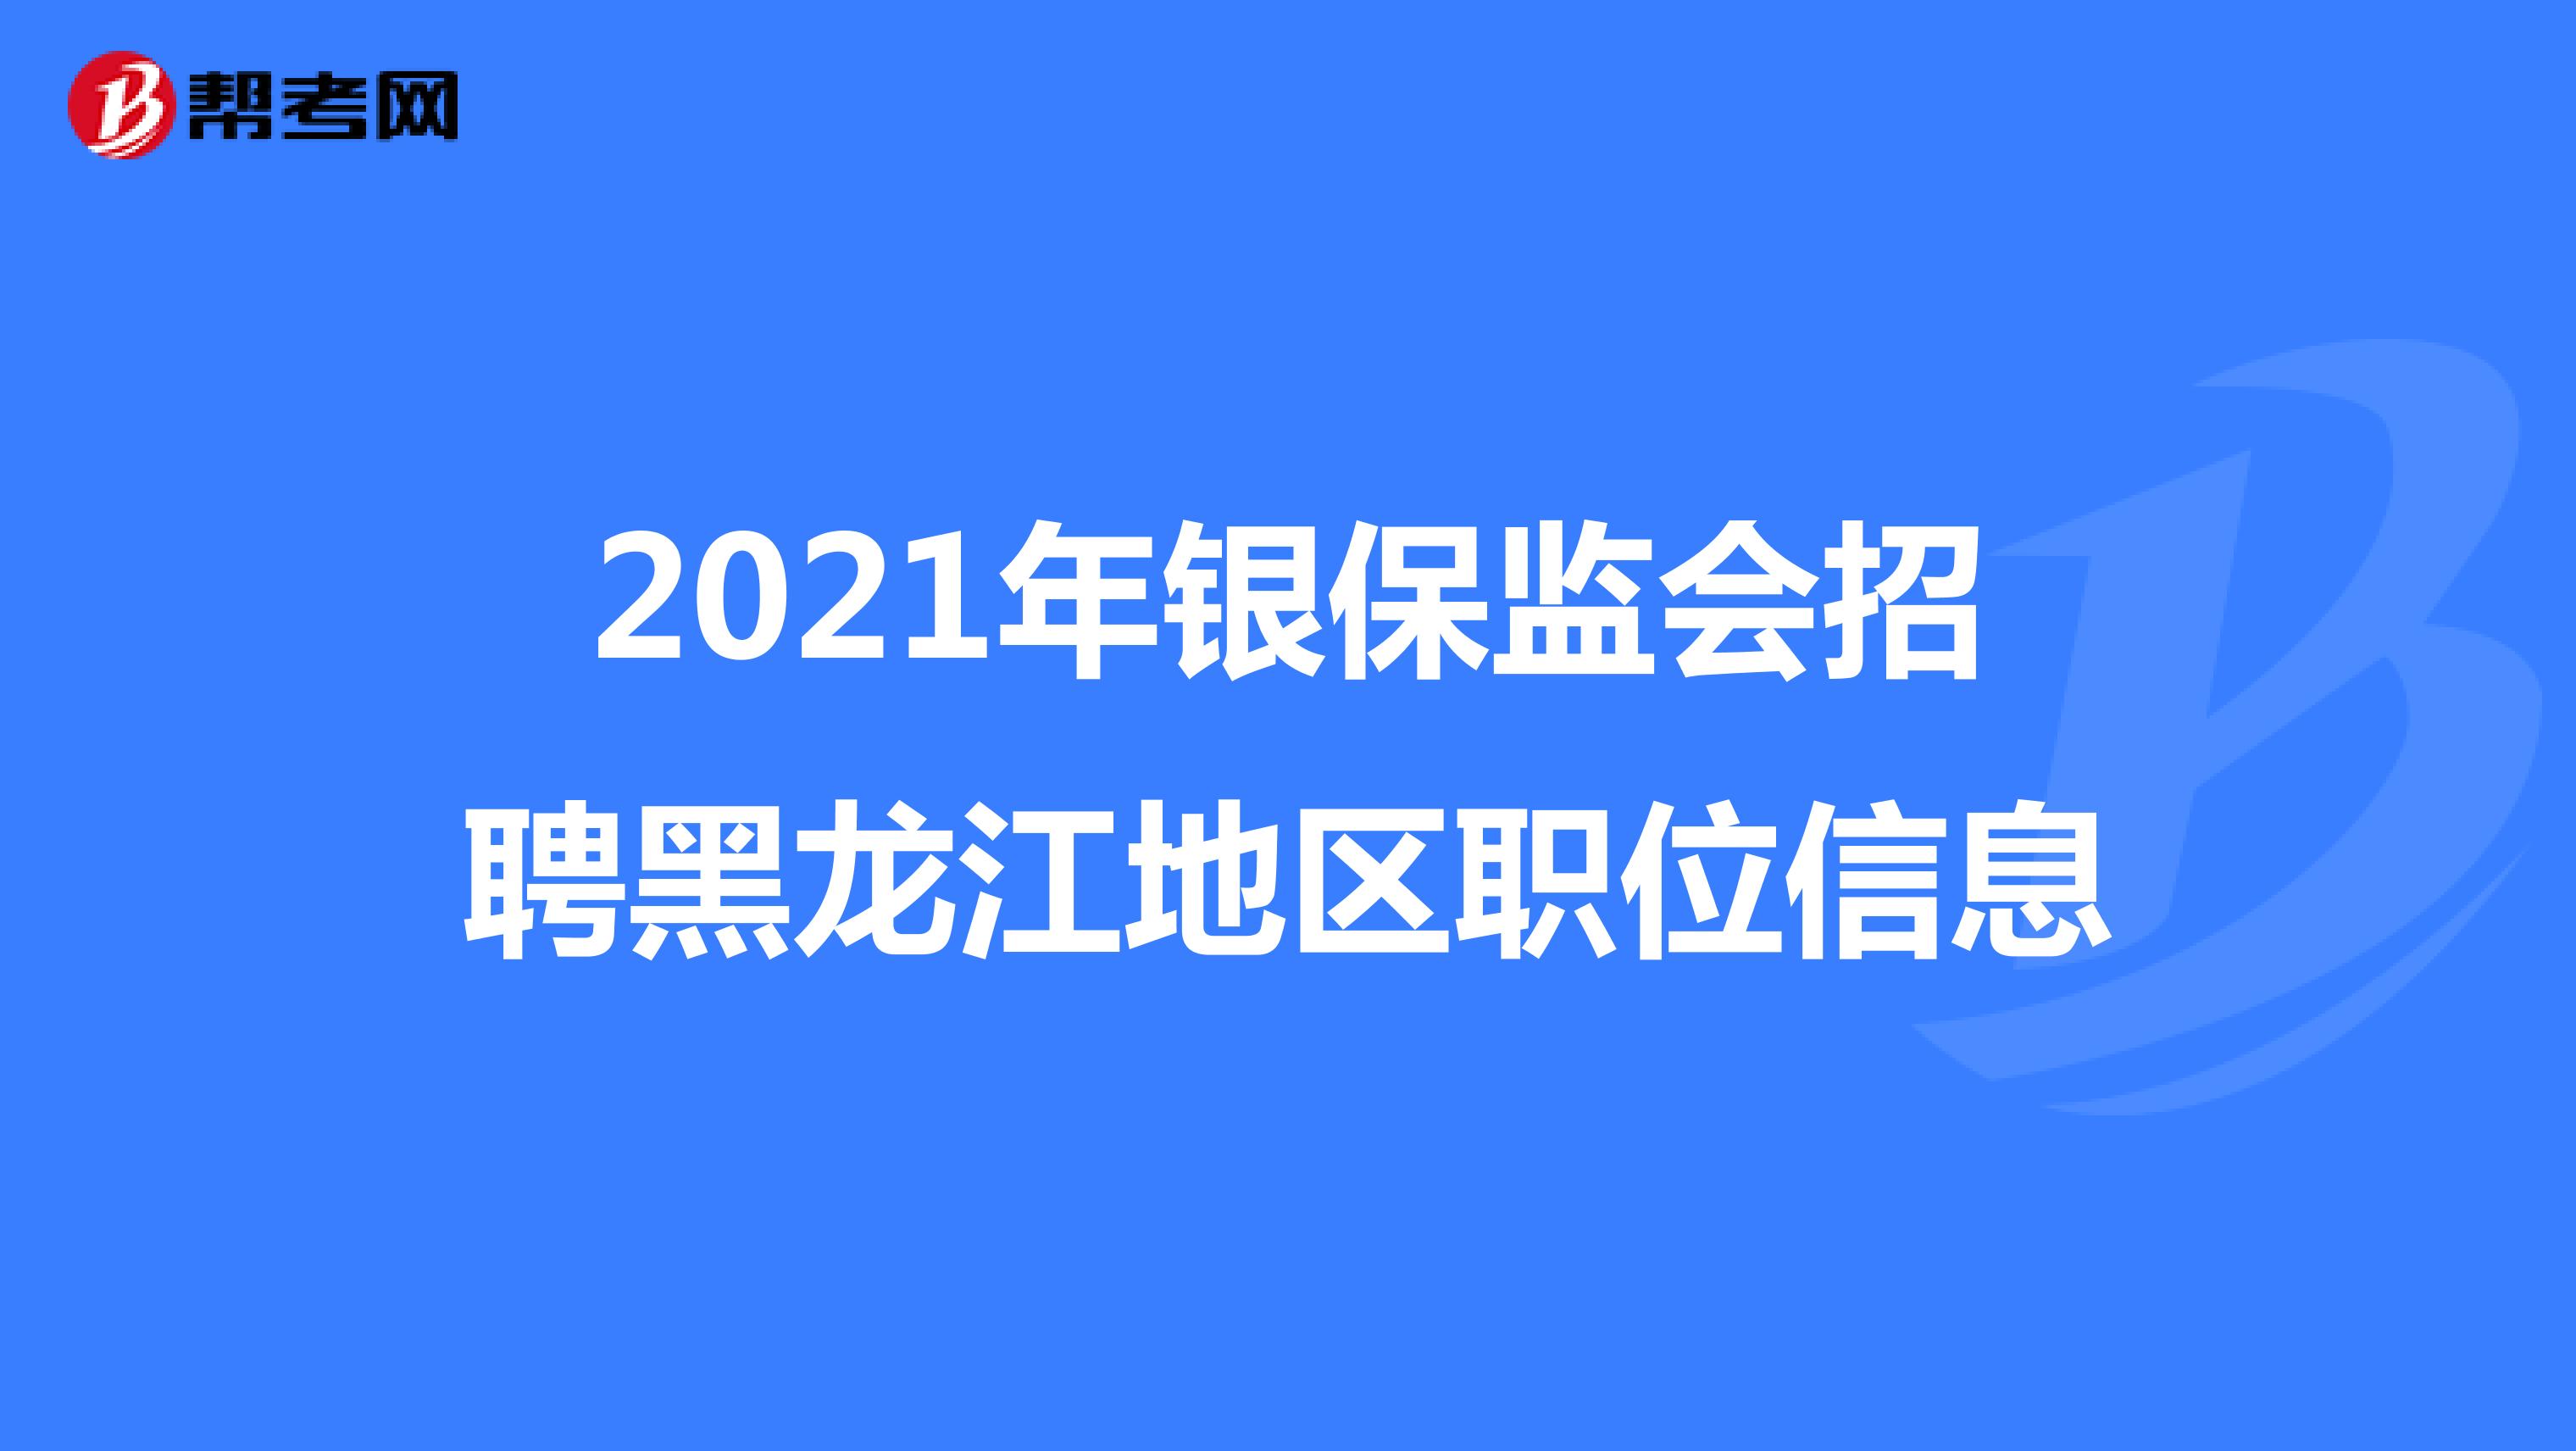 2021年银保监会招聘黑龙江地区职位信息